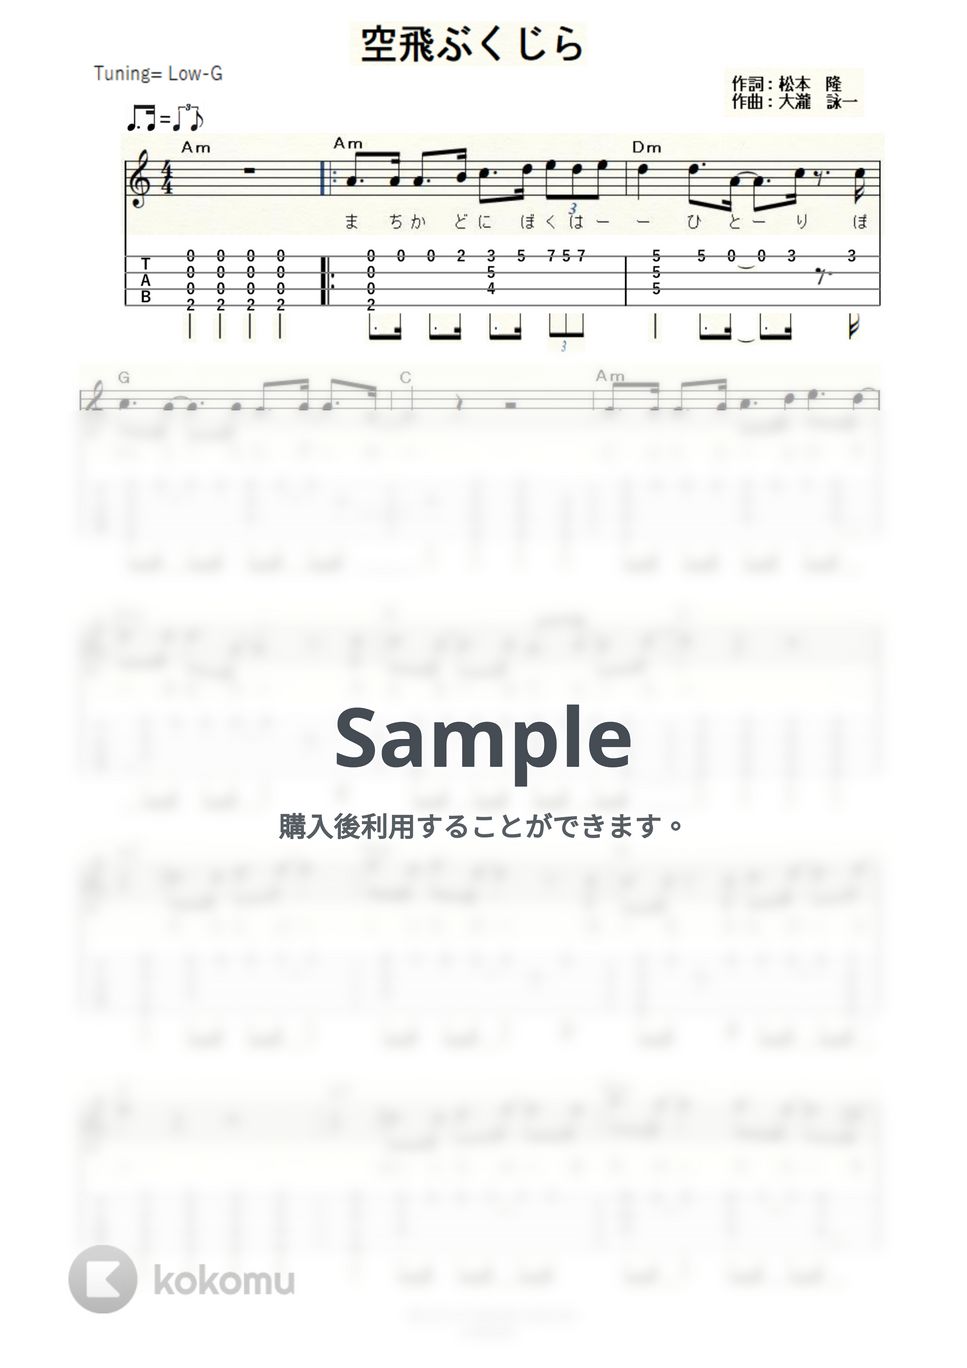 大瀧詠一 - 空飛ぶくじら (ｳｸﾚﾚｿﾛ/Low-G/中級) by ukulelepapa